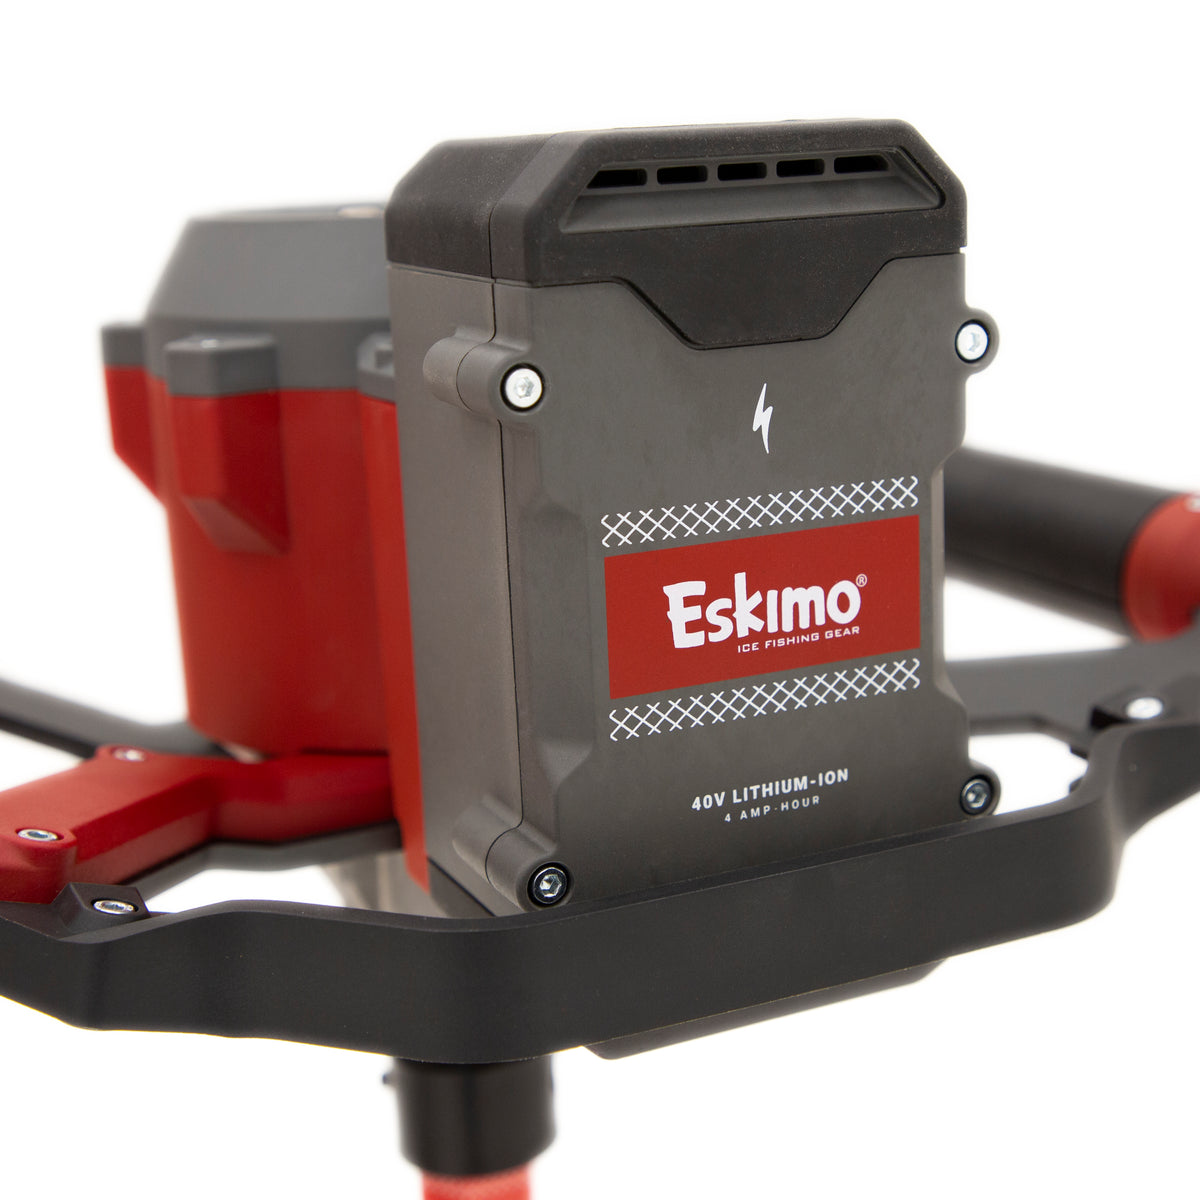 Eskimo E40 8" Composite Electric Auger 40v